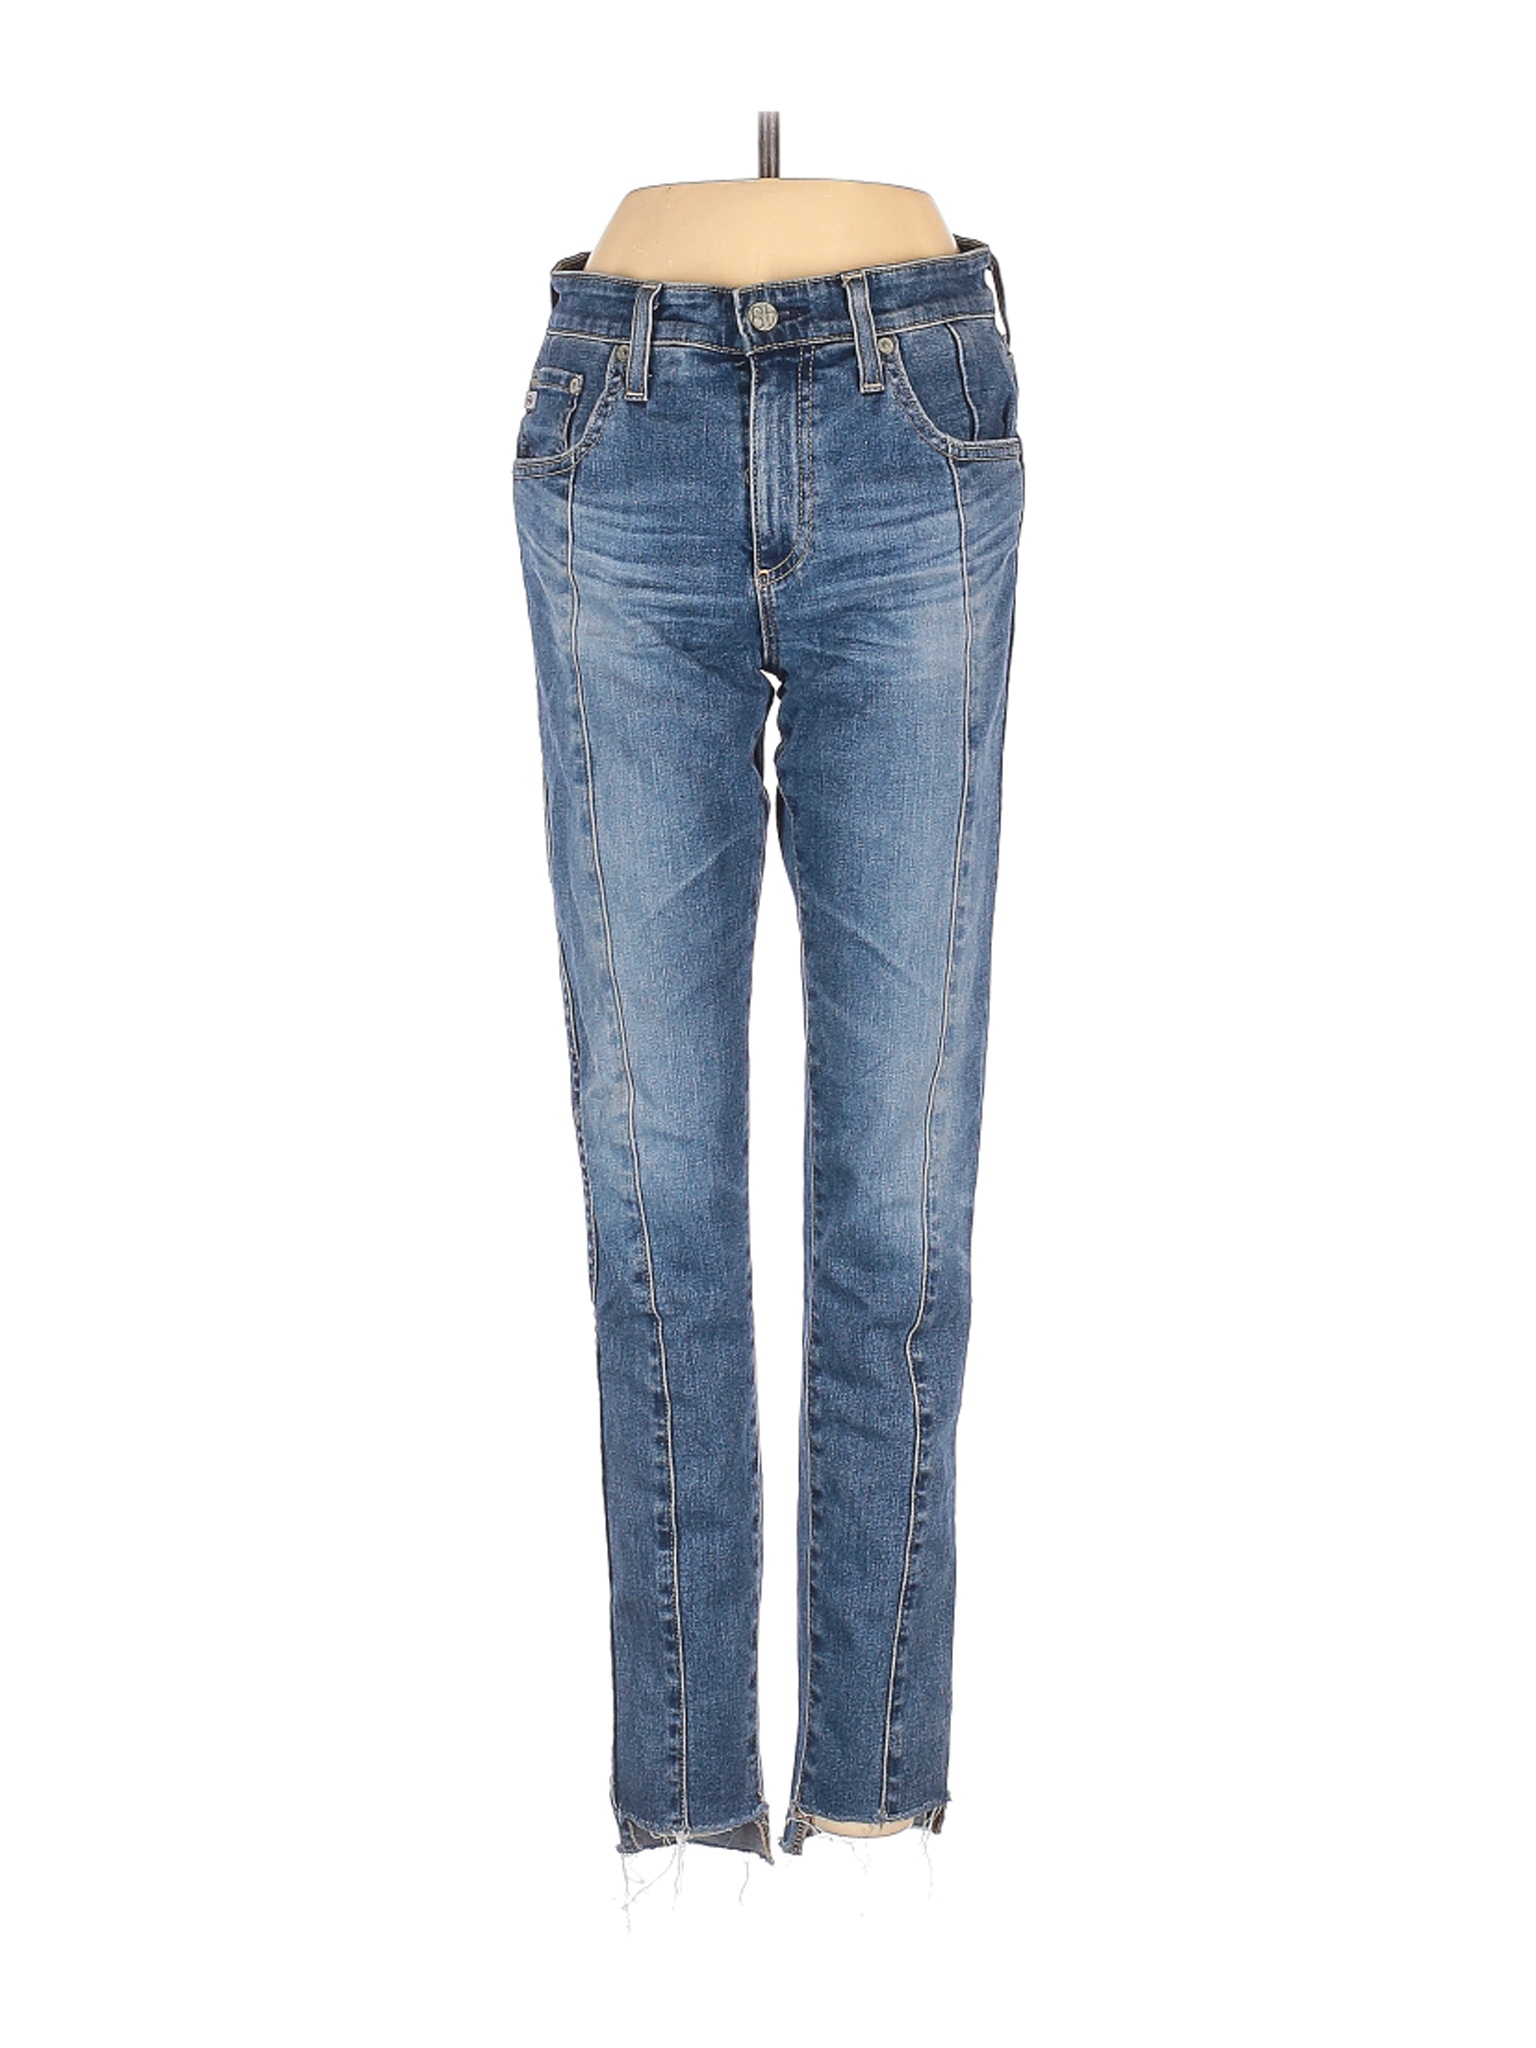 Adriano Goldschmied Women Blue Jeans 25W | eBay